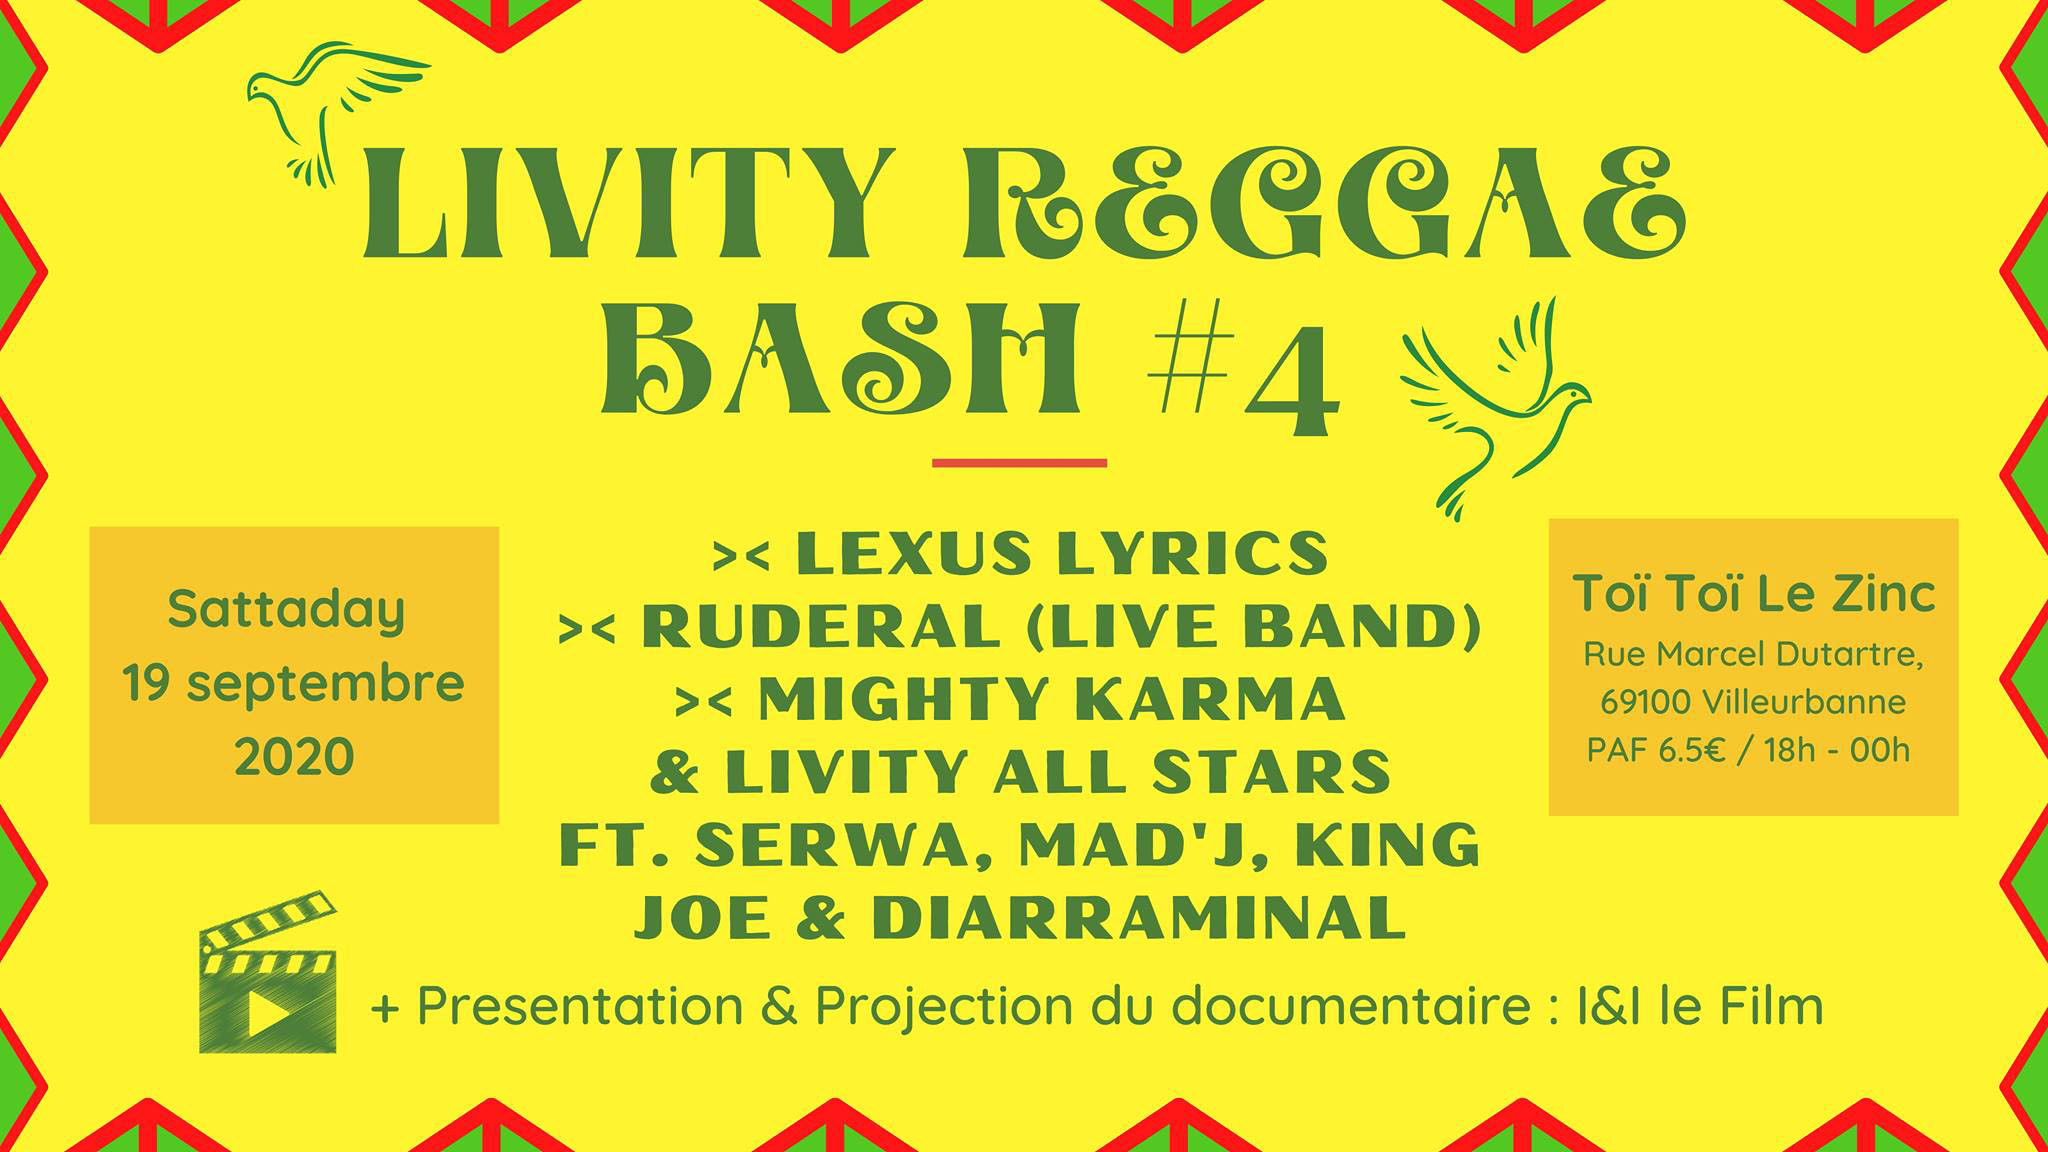 Livity Reggae Bash #4